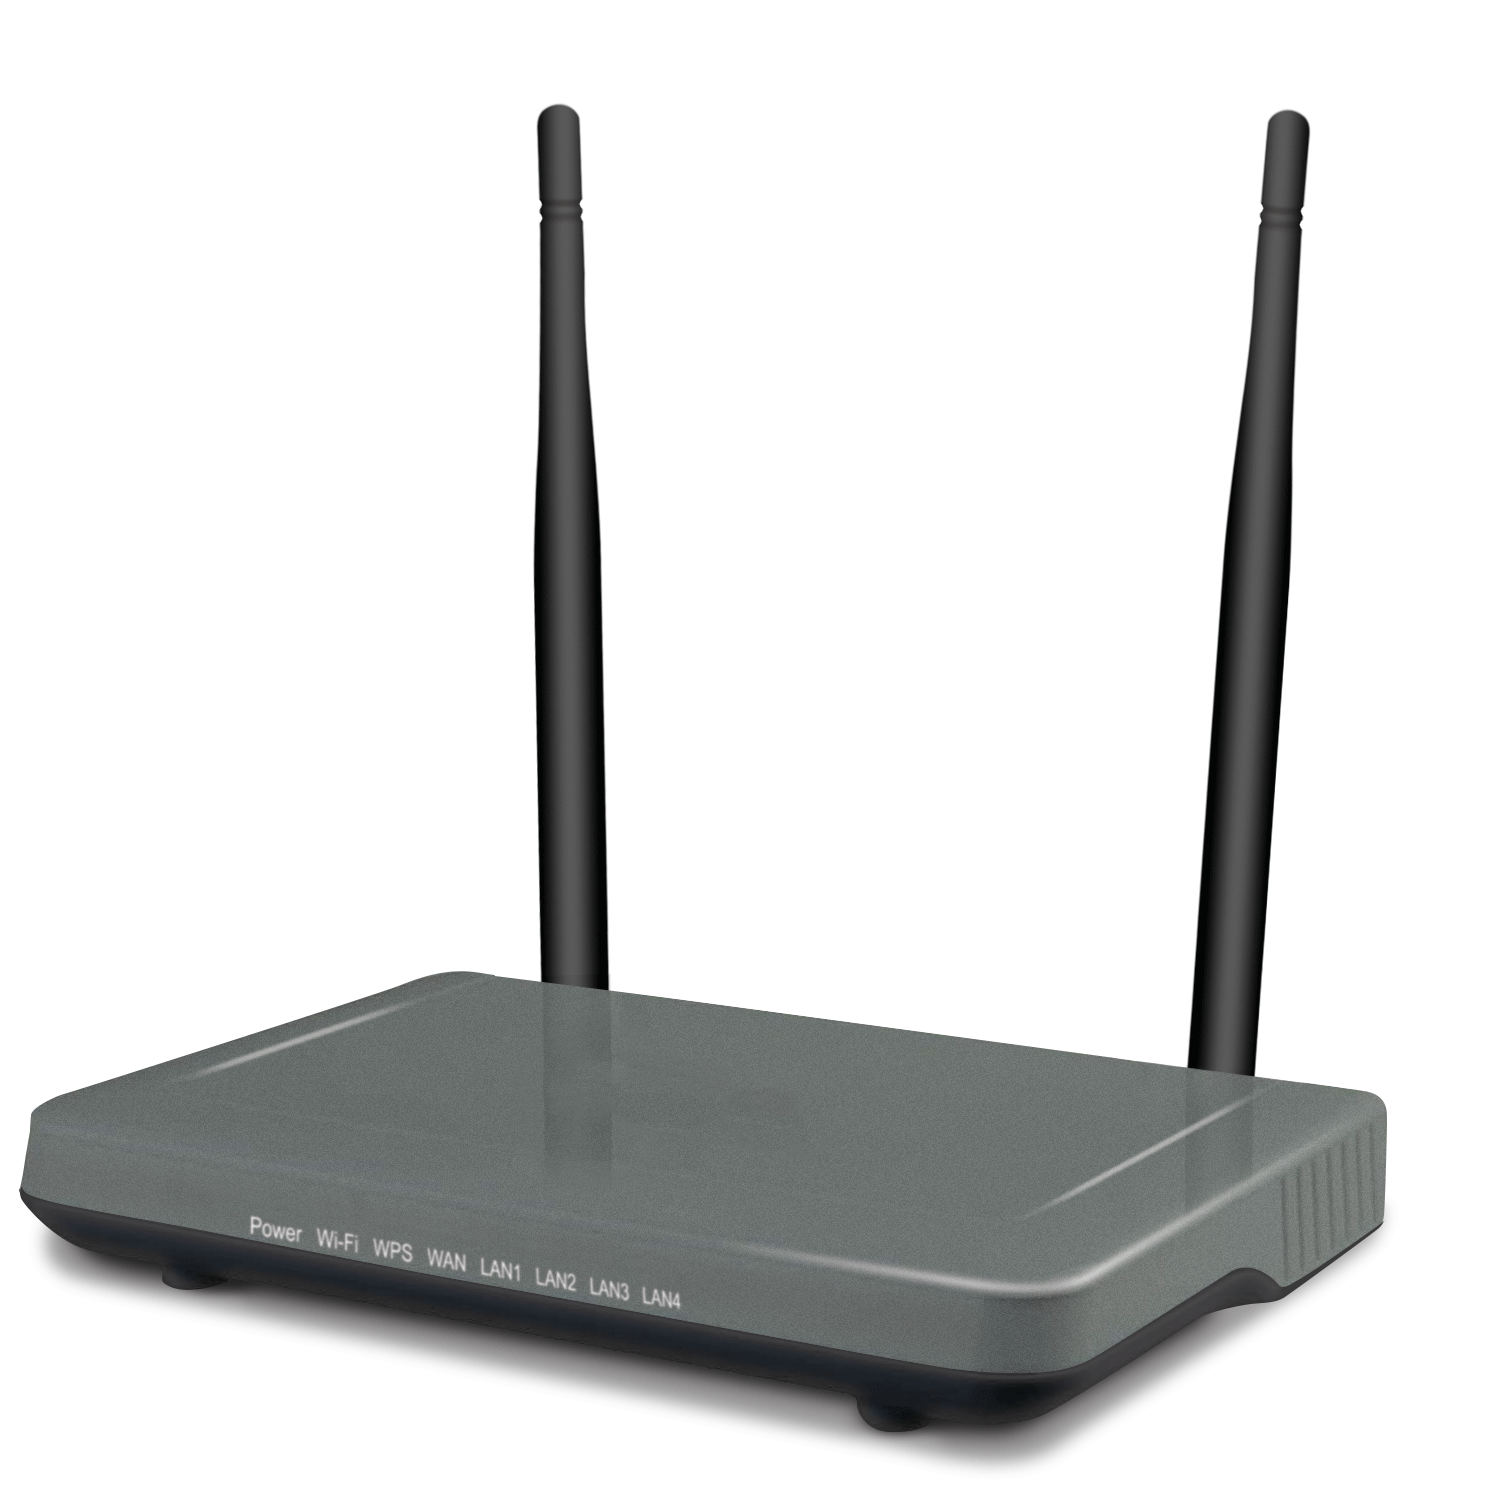 Access router. Wi-Fi роутер ZYXEL. Роутер 1 ГБ. Маршрутизатор Watson 5. Маршрутизатор FG-481621m.